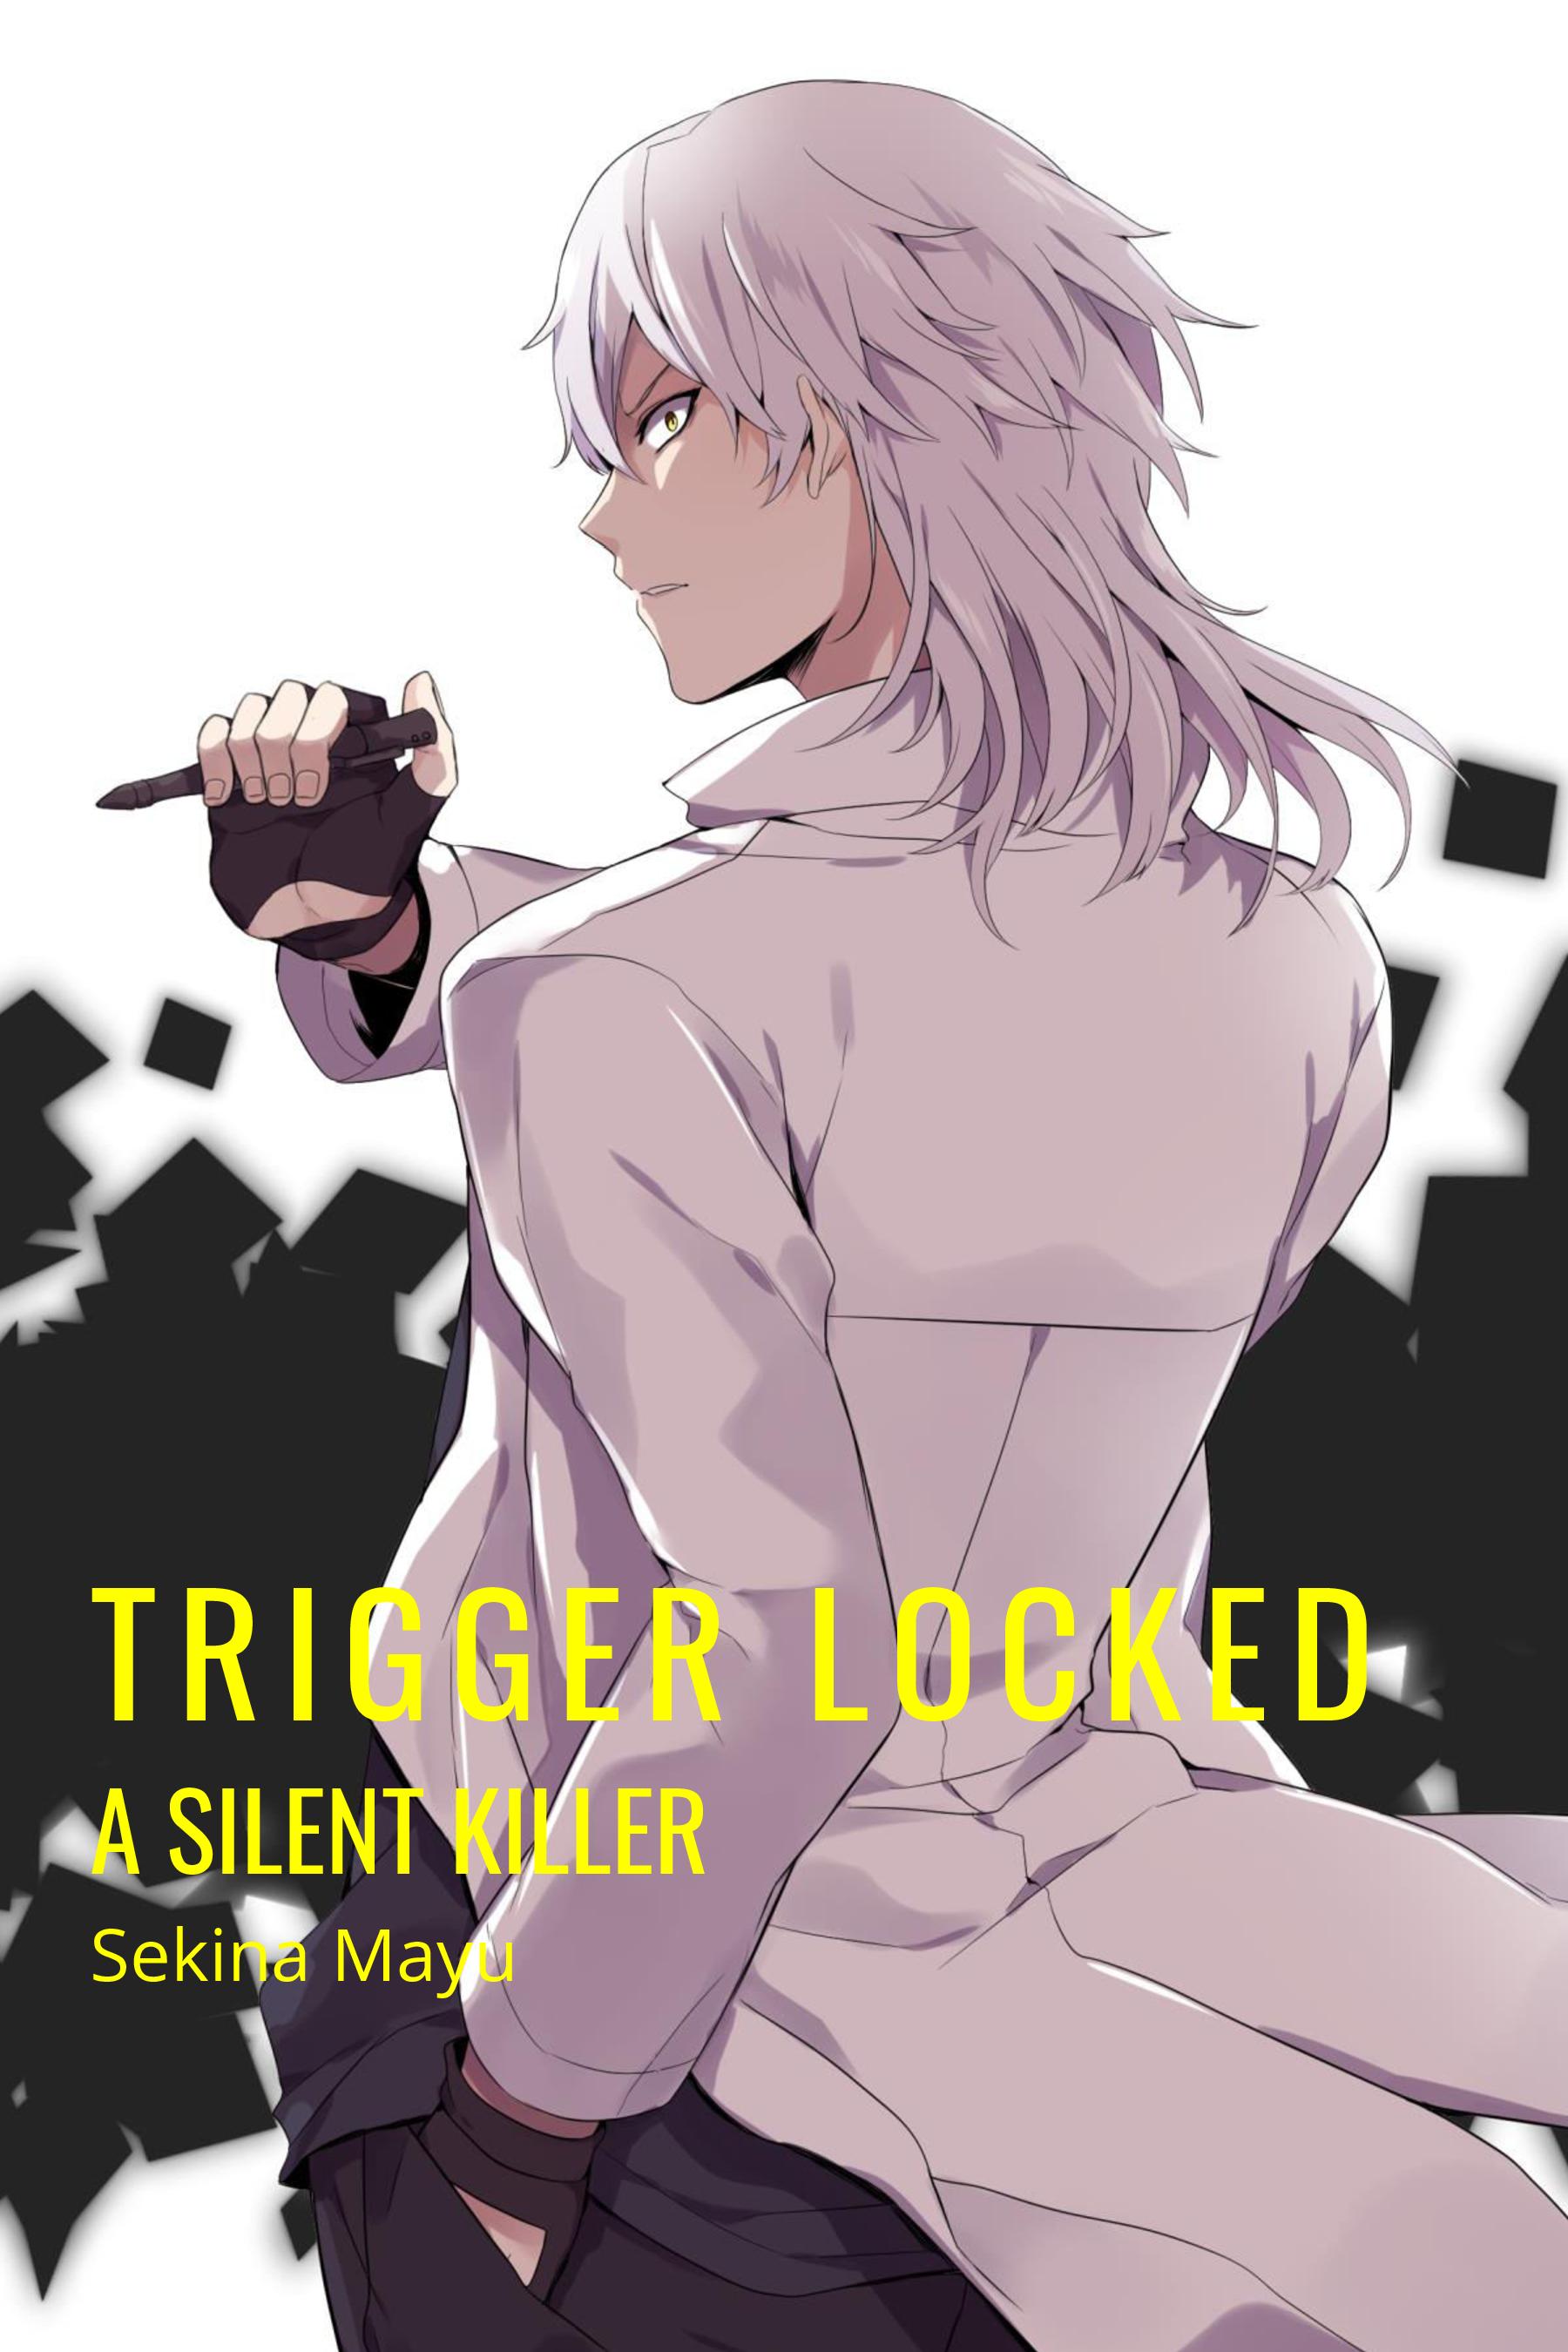 A Silent Killer Anime-Inspired Novel